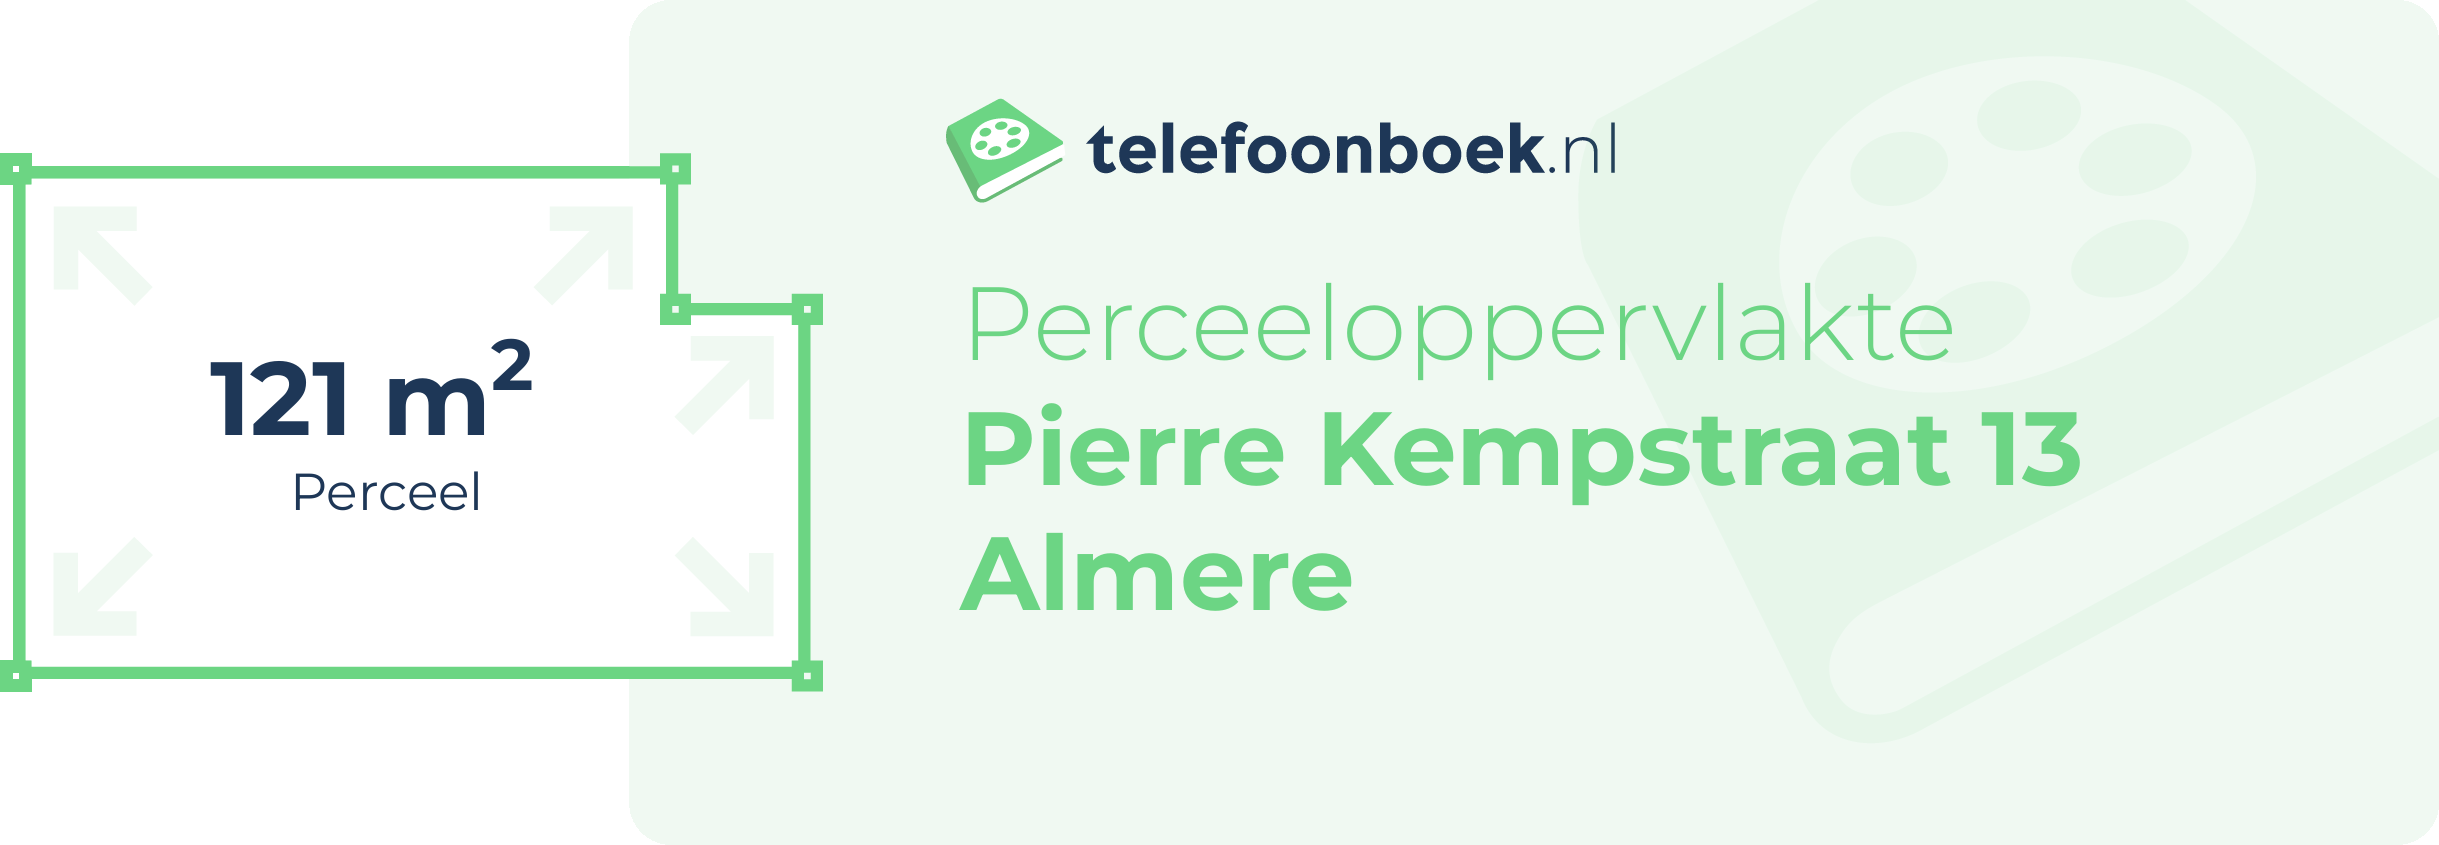 Perceeloppervlakte Pierre Kempstraat 13 Almere